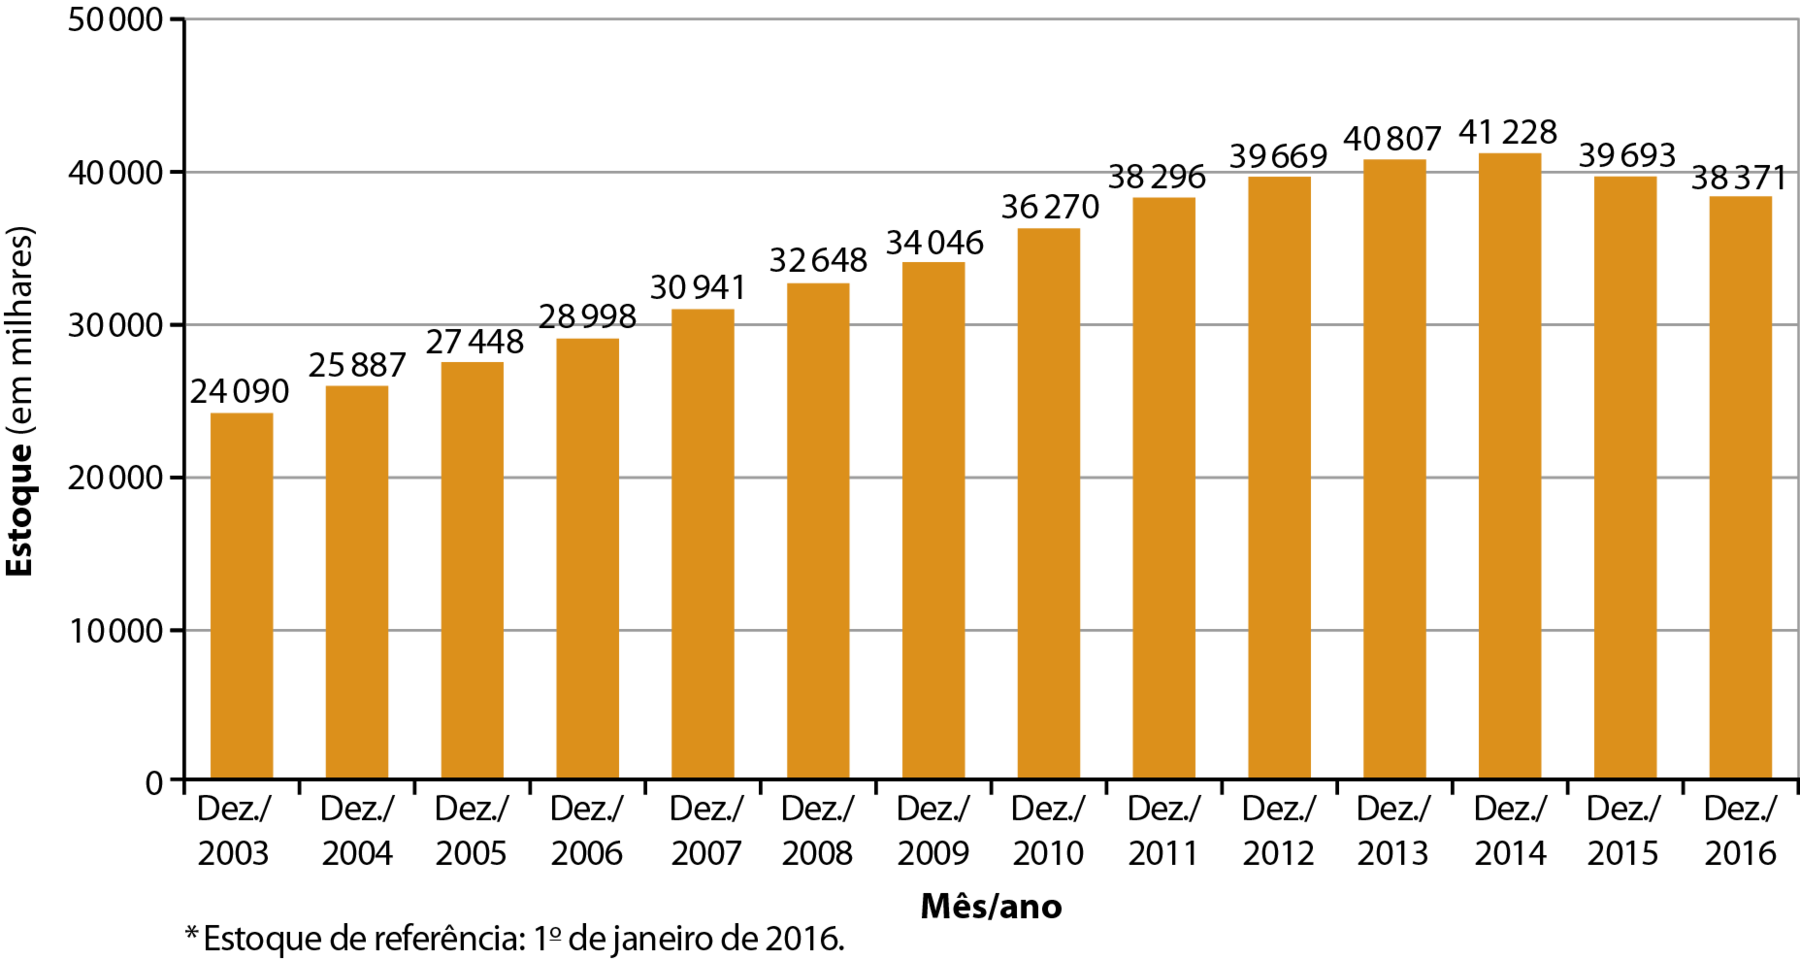 Gráfico. Brasil: empregos formais (2003 a 2016). Gráfico de colunas representando o estoque de empregos formais no Brasil, de 2003 a 2016. No eixo vertical estão os valores do estoque, em milhares, de 0 a 50.000. No eixo horizontal estão os anos. Dezembro de 2003: 24.090; Dezembro de 2004: 25.887; Dezembro de 2005: 27.448; Dezembro de 2006: 28.998; Dezembro de 2007: 30.941; Dezembro de 2008: 32.648; Dezembro de 2009: 34.046; Dezembro de 2010: 36.270; Dezembro de 2011: 38.296; Dezembro de 2012: 39.669; Dezembro de 2013: 40.807; Dezembro de 2014: 41.228; Dezembro de 2015: 39.693; Dezembro de 2016: 38.371. Estoque de referência: primeiro de janeiro de 2016.